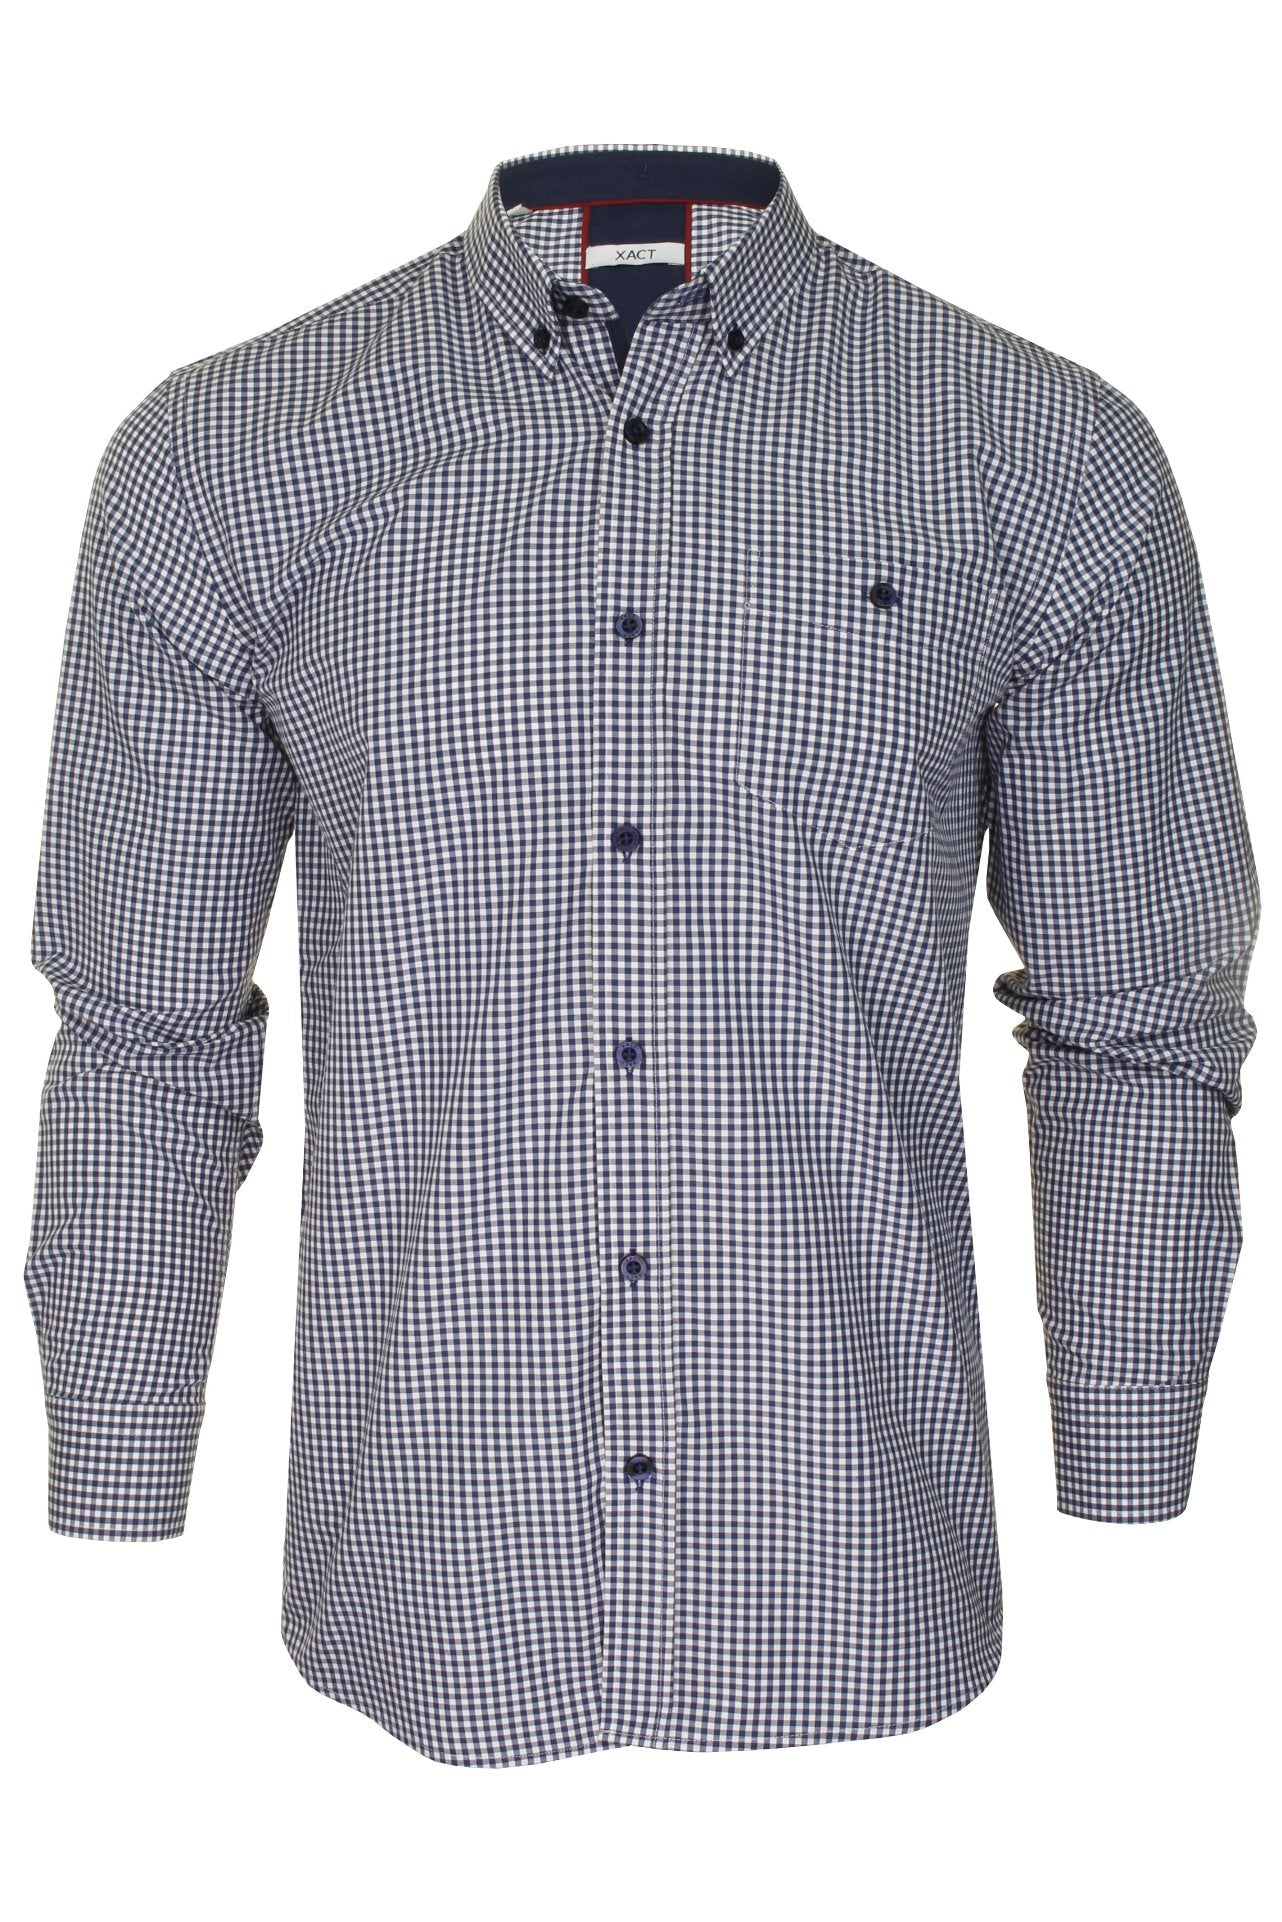 Xact Mens Slim Fit Gingham Check Shirt - Long Sleeved-Main Image